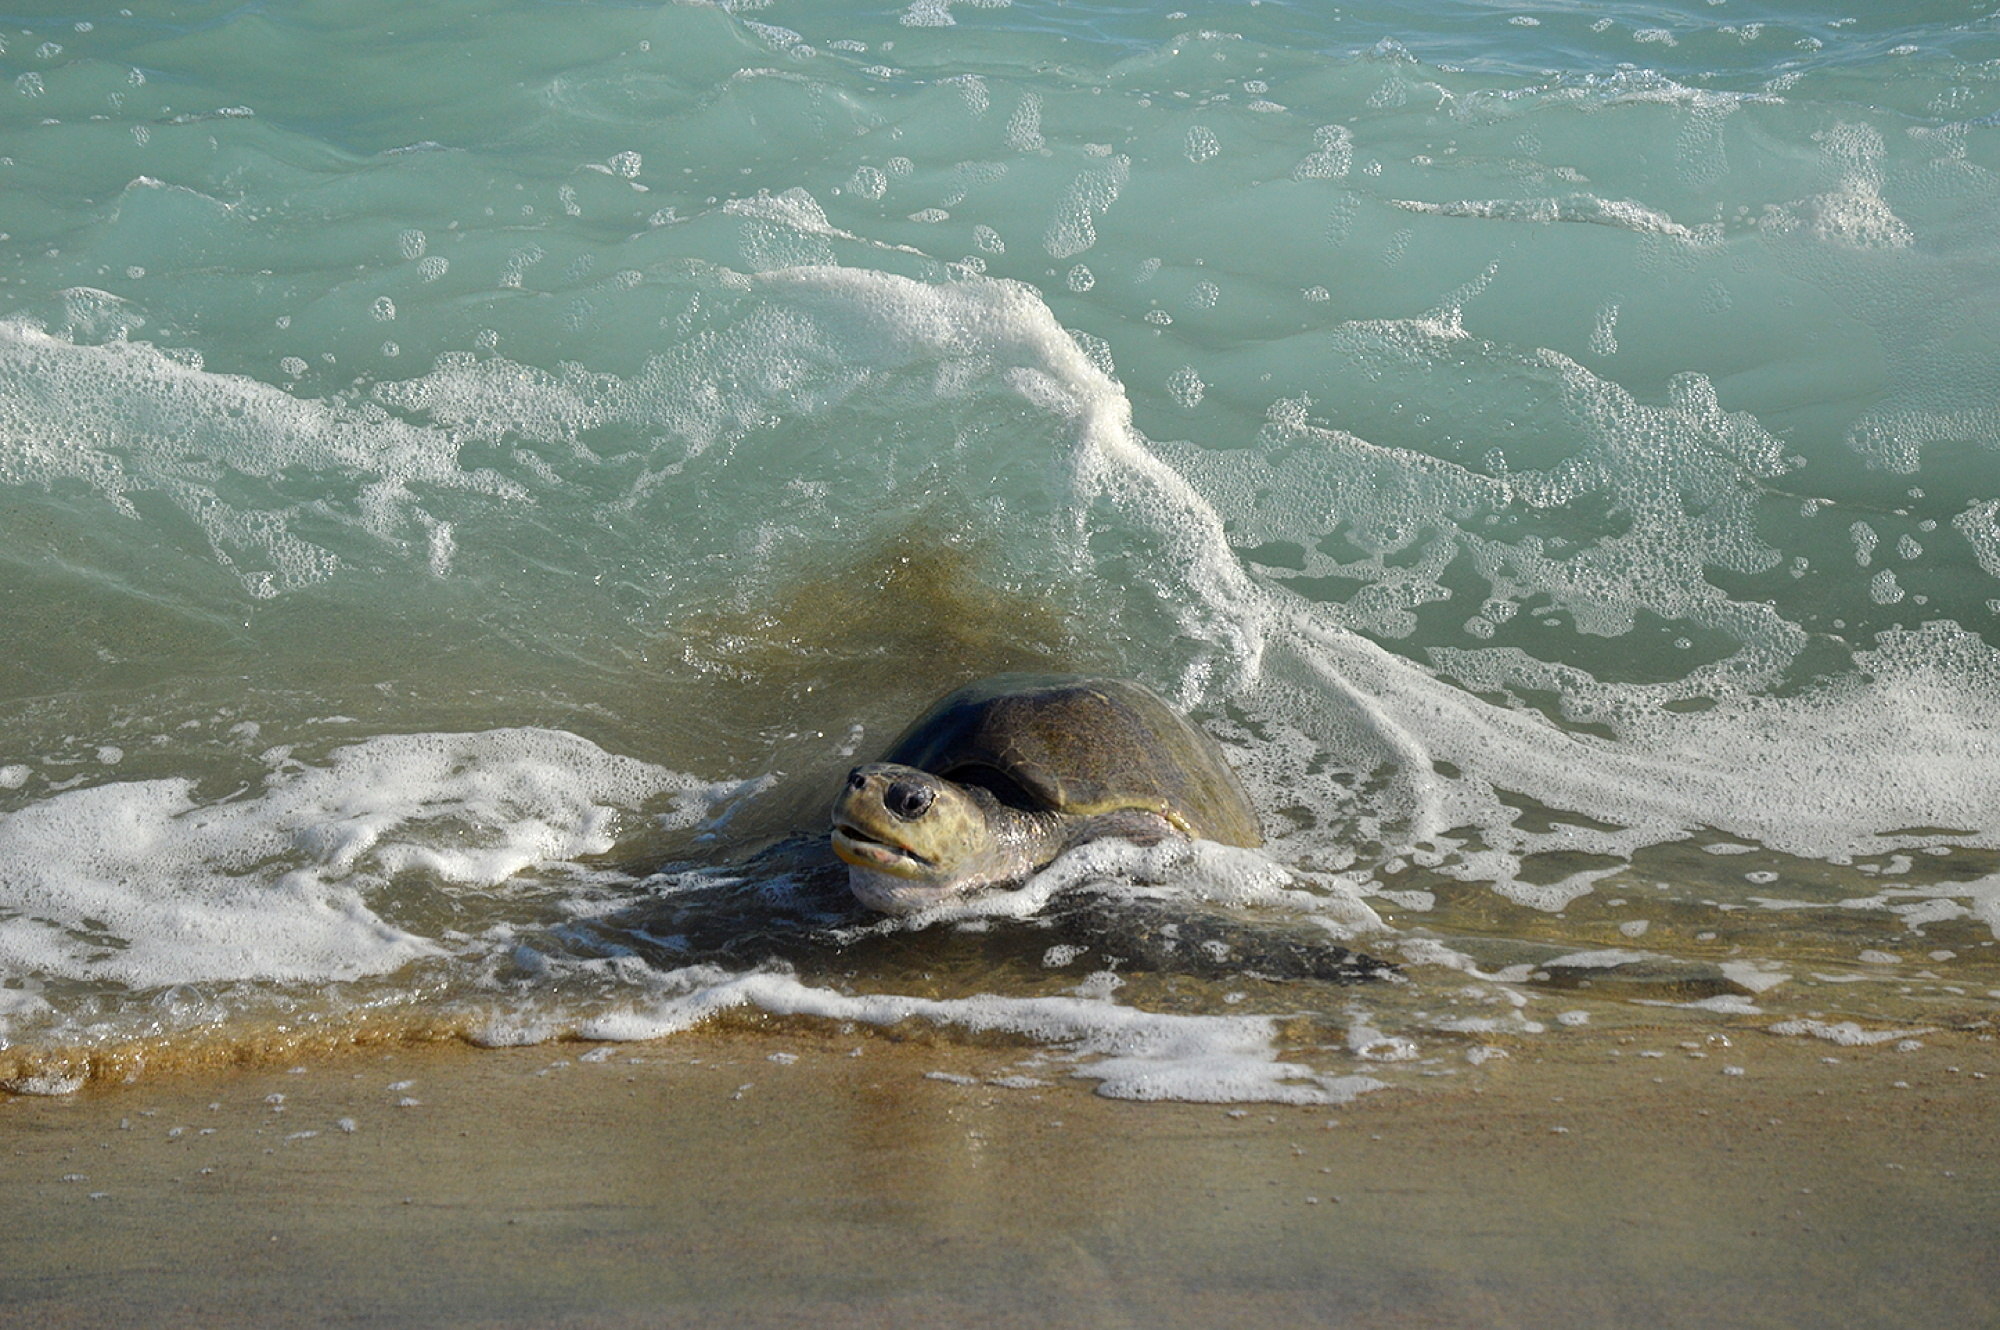  Cerca de 12 mil tortugas golfinas llegan a las costas de Oaxaca